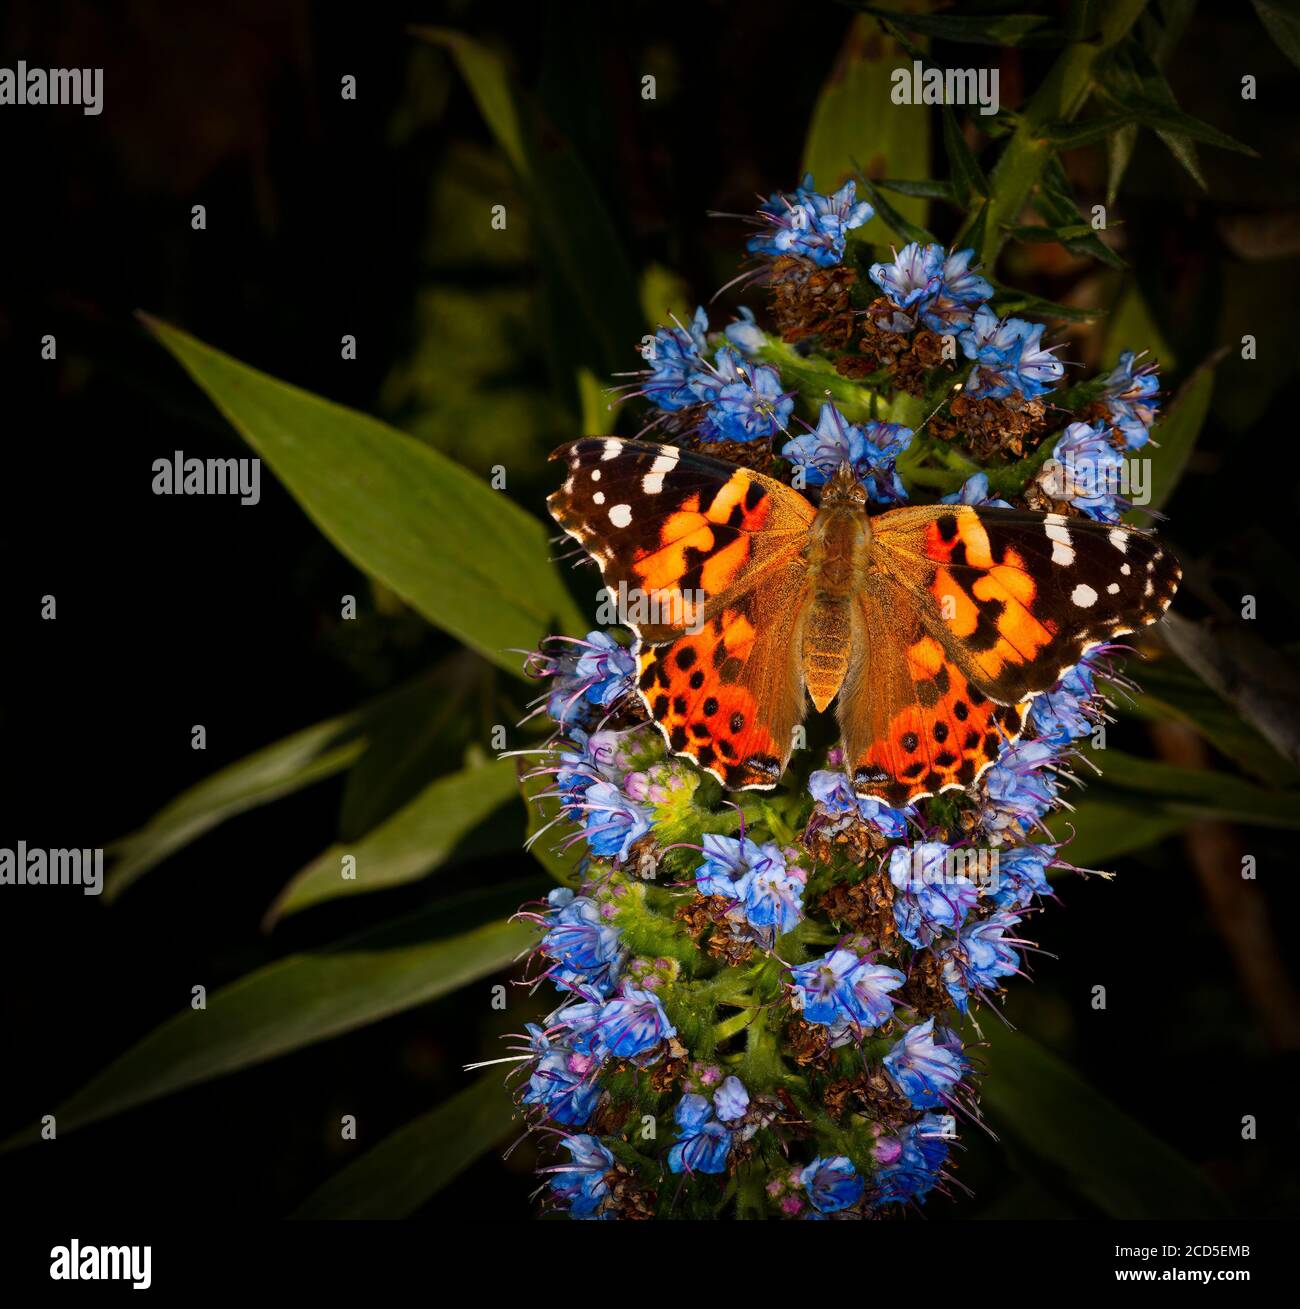 Naturfoto des Schmetterlings, der auf einer blauen Blume steht Stockfoto